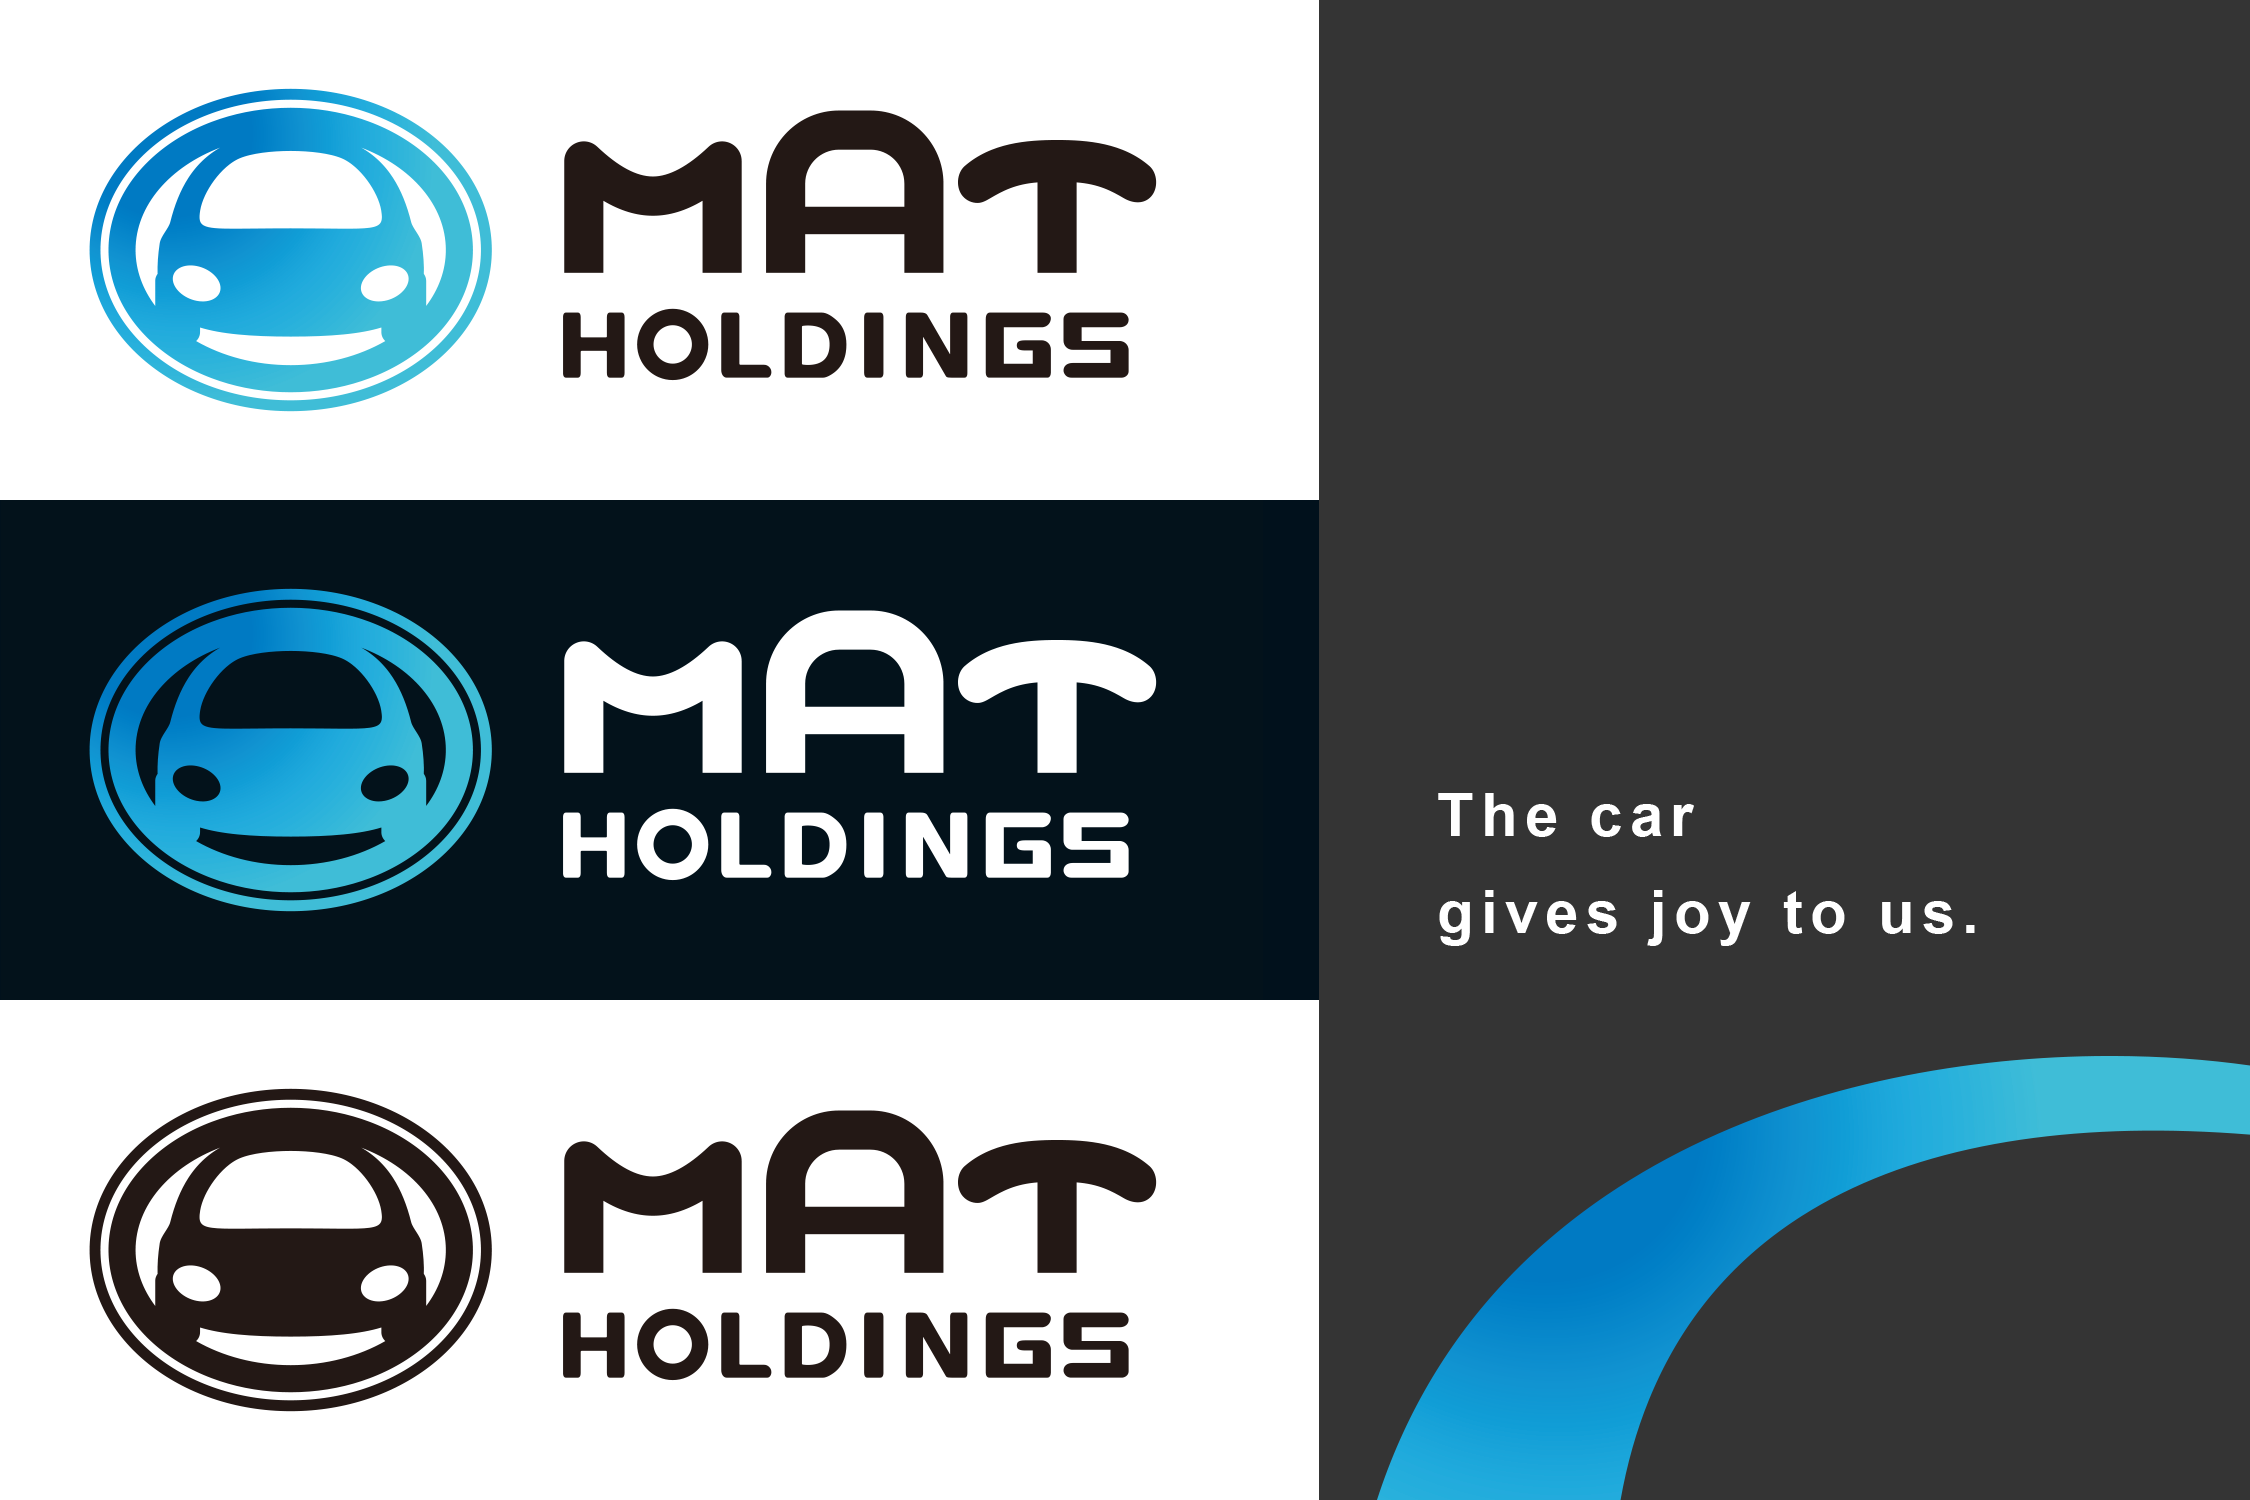 株式会社MATホールディングス ロゴ